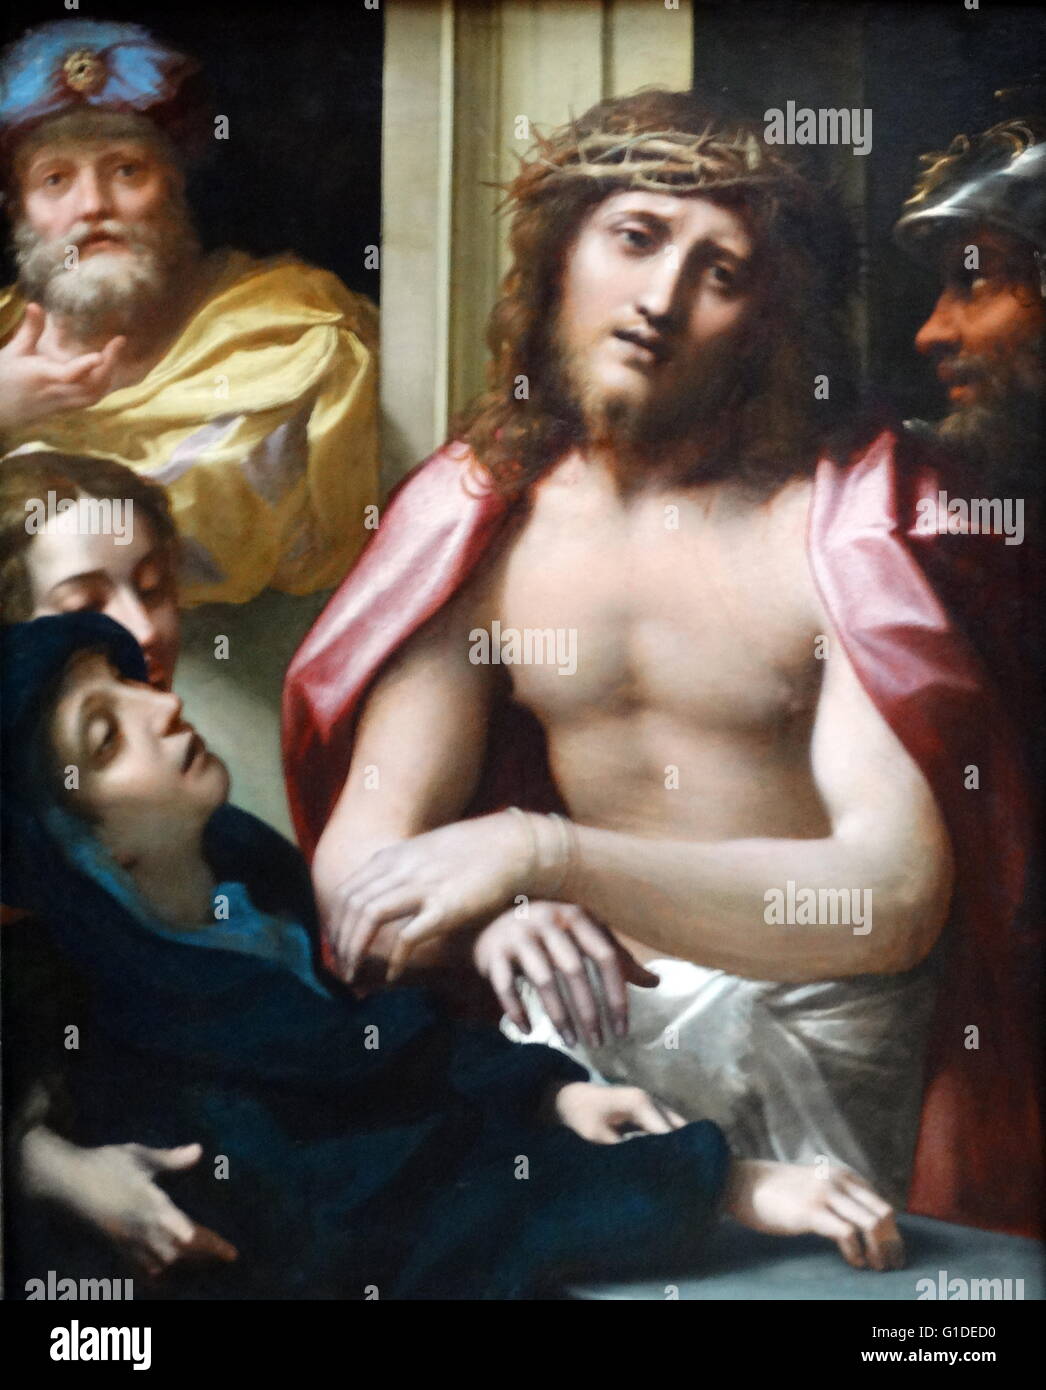 Gemälde mit dem Titel "Christus präsentiert den Menschen" von Antonio da Correggio (1489-1534) vor allem Maler von Parma Schule der italienischen Renaissance. Datiert aus dem 16. Jahrhundert Stockfoto